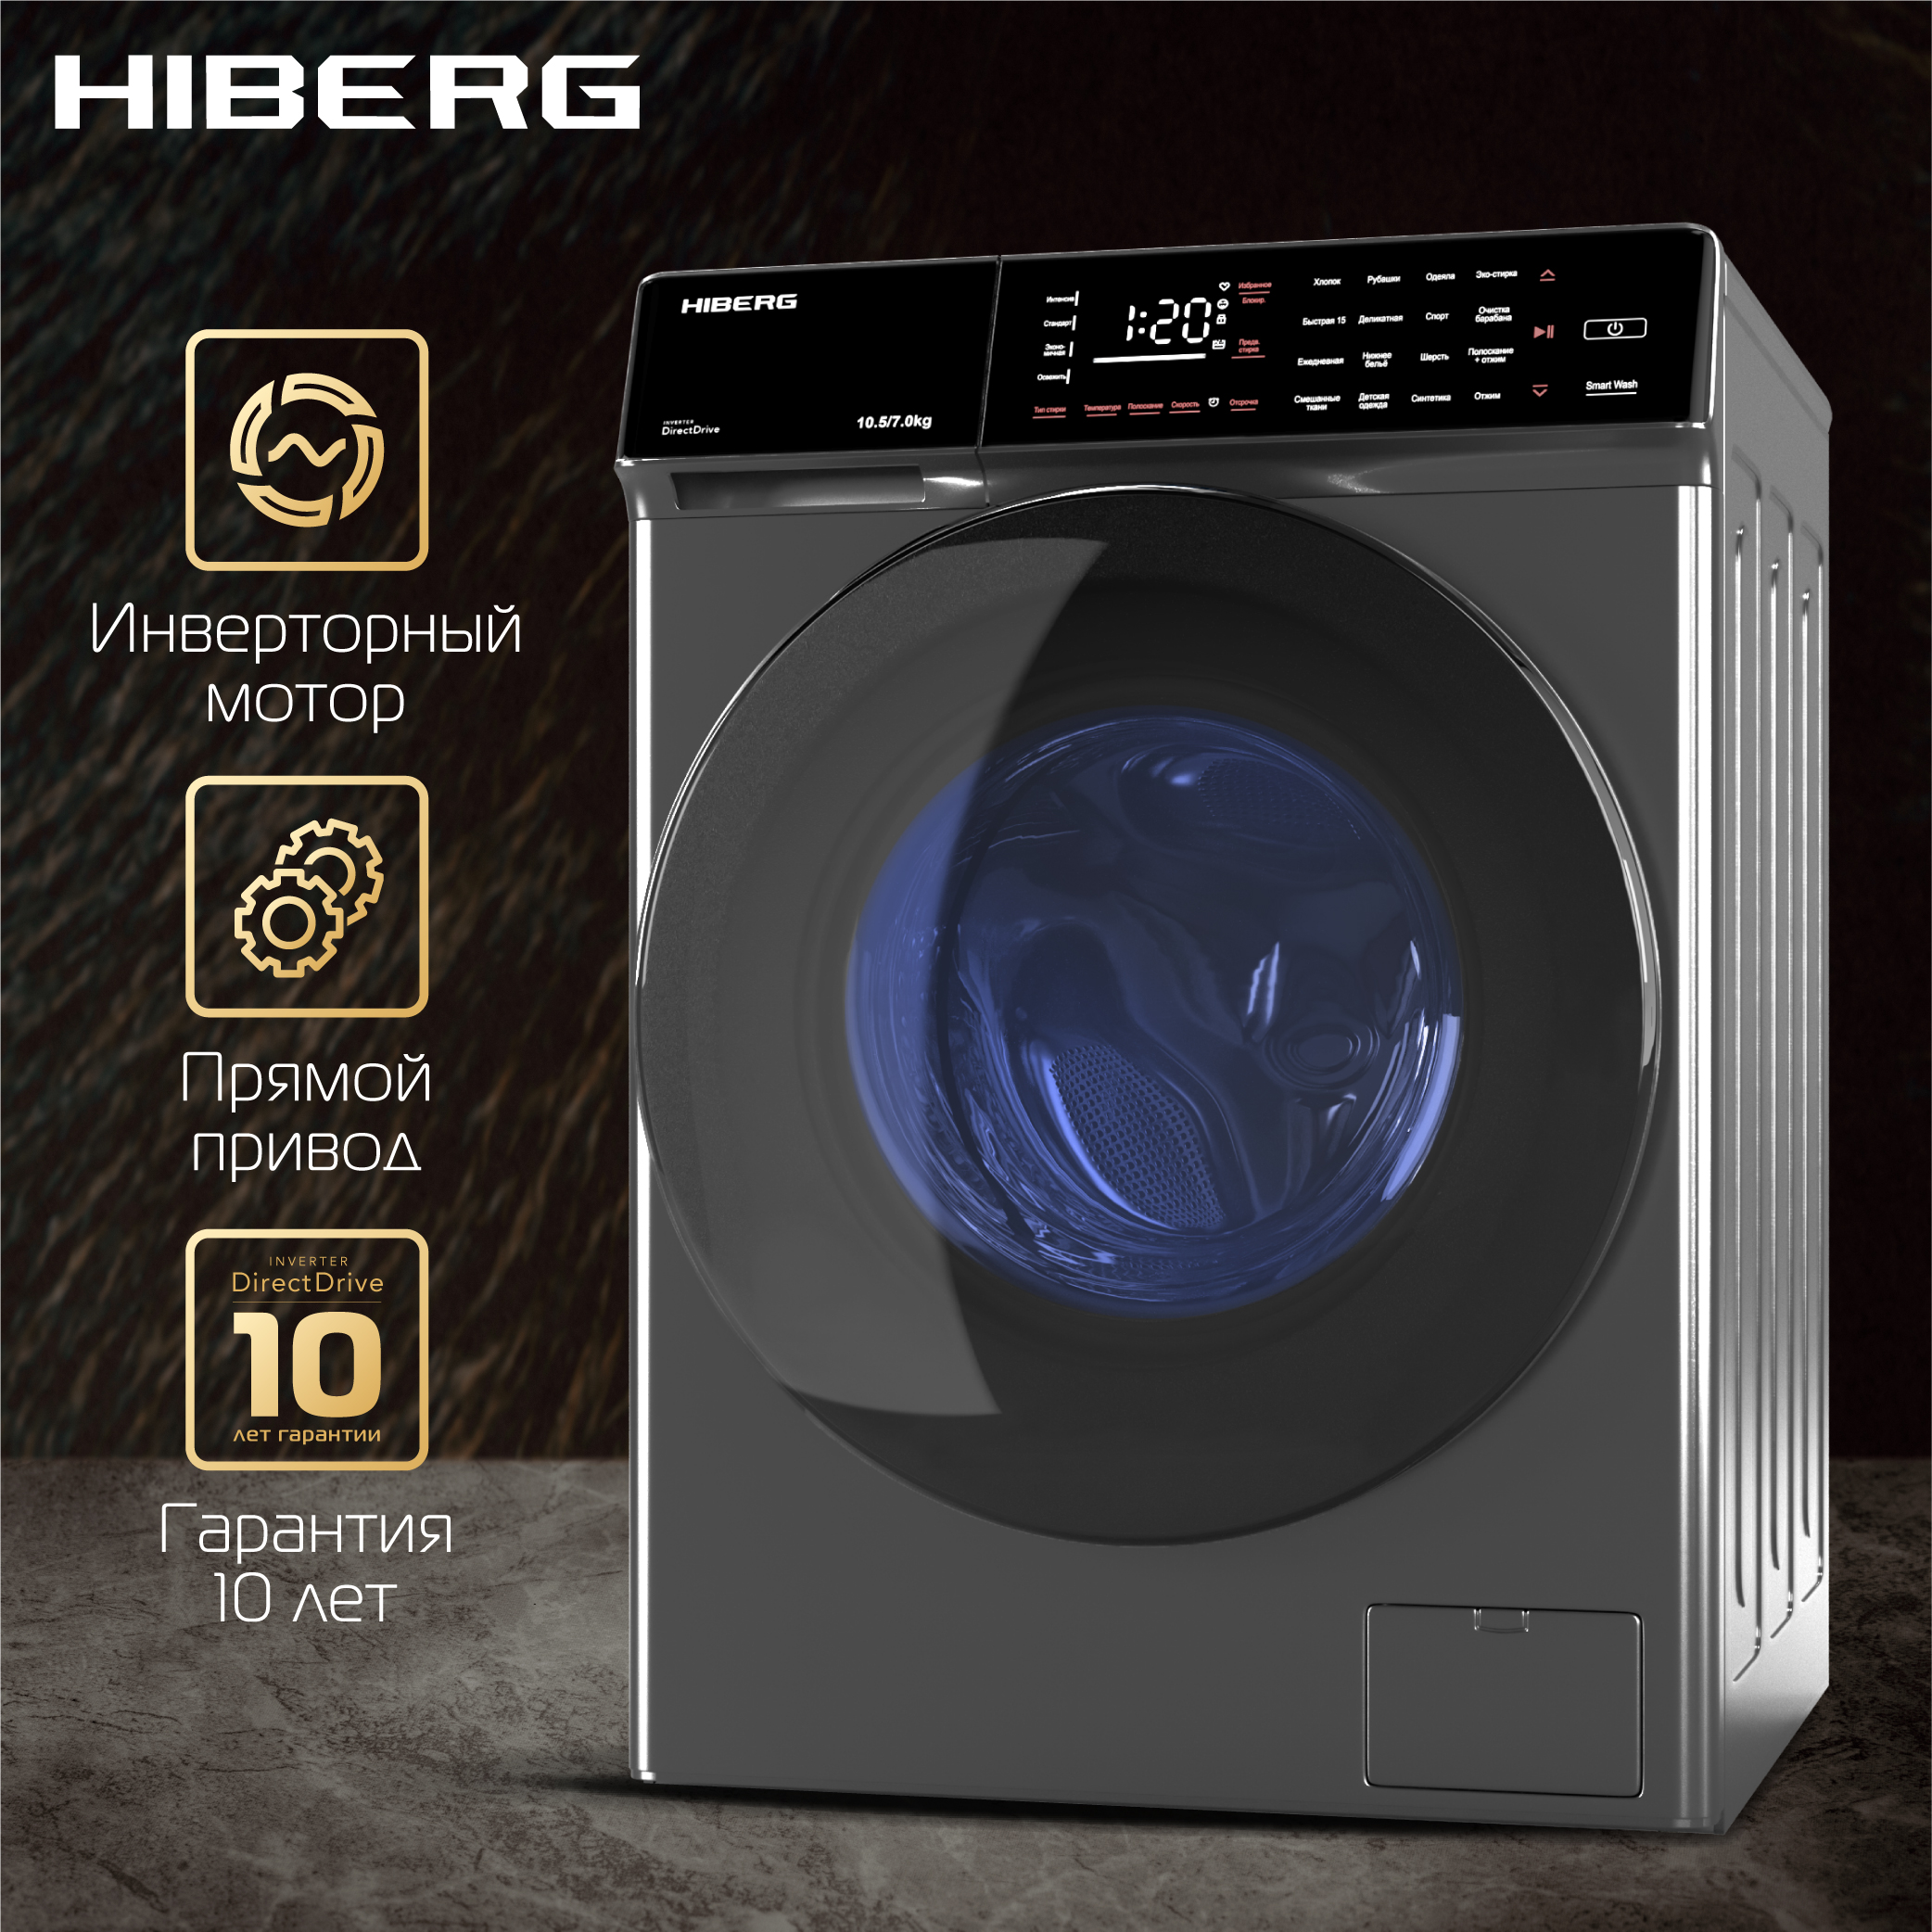 Стиральная машина Hiberg i-DDQ9 - 10714 Sd серебристый стиральная машина hiberg i ddq9 612 sd